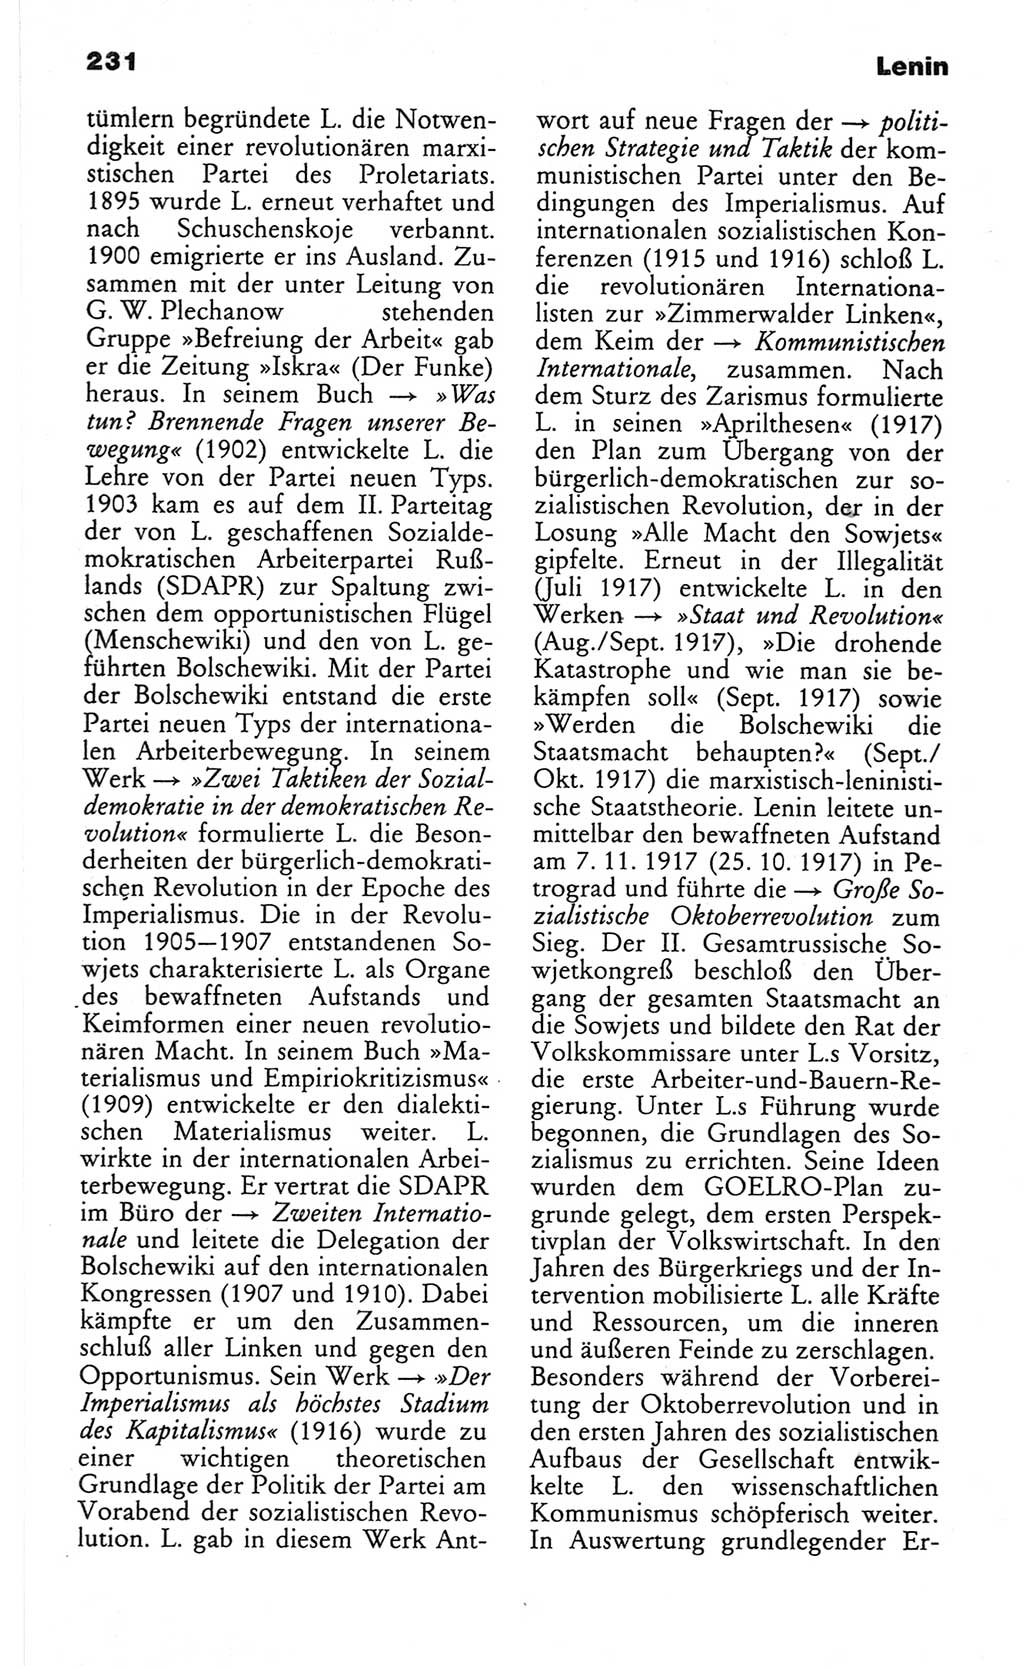 Wörterbuch des wissenschaftlichen Kommunismus [Deutsche Demokratische Republik (DDR)] 1982, Seite 231 (Wb. wiss. Komm. DDR 1982, S. 231)